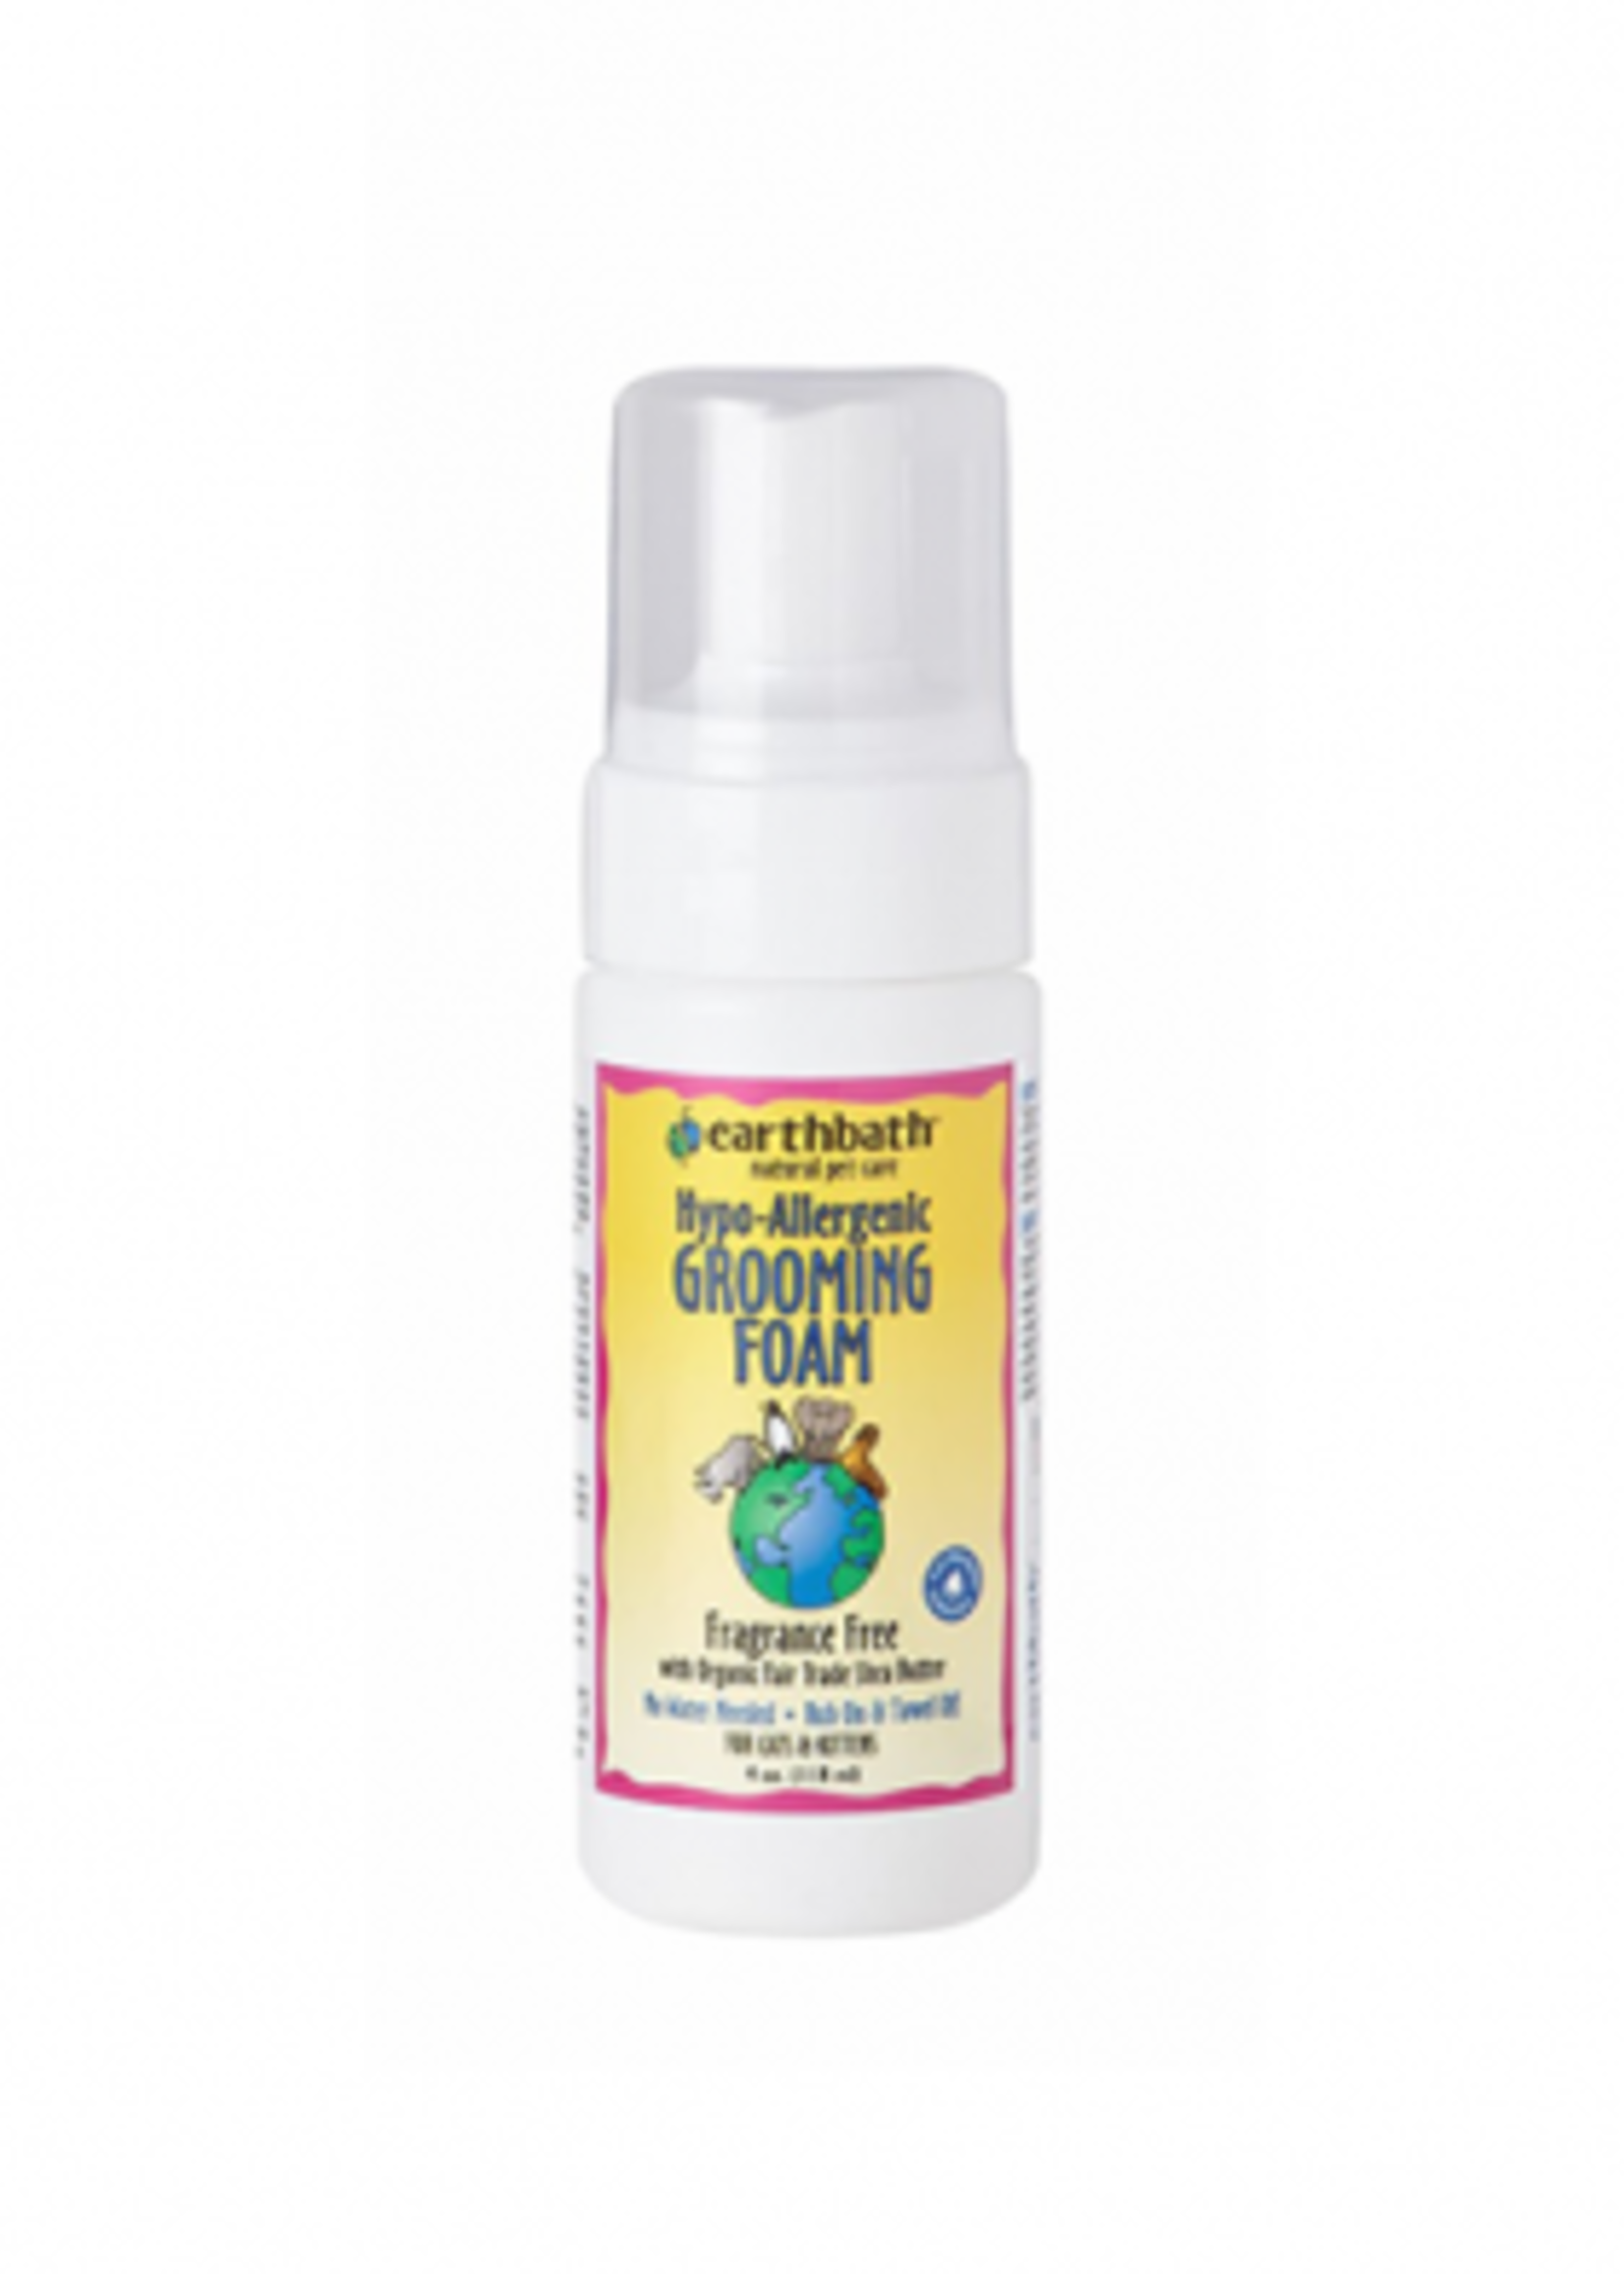 Earthbath® Hypo-Allergenic Grooming Foam 4oz